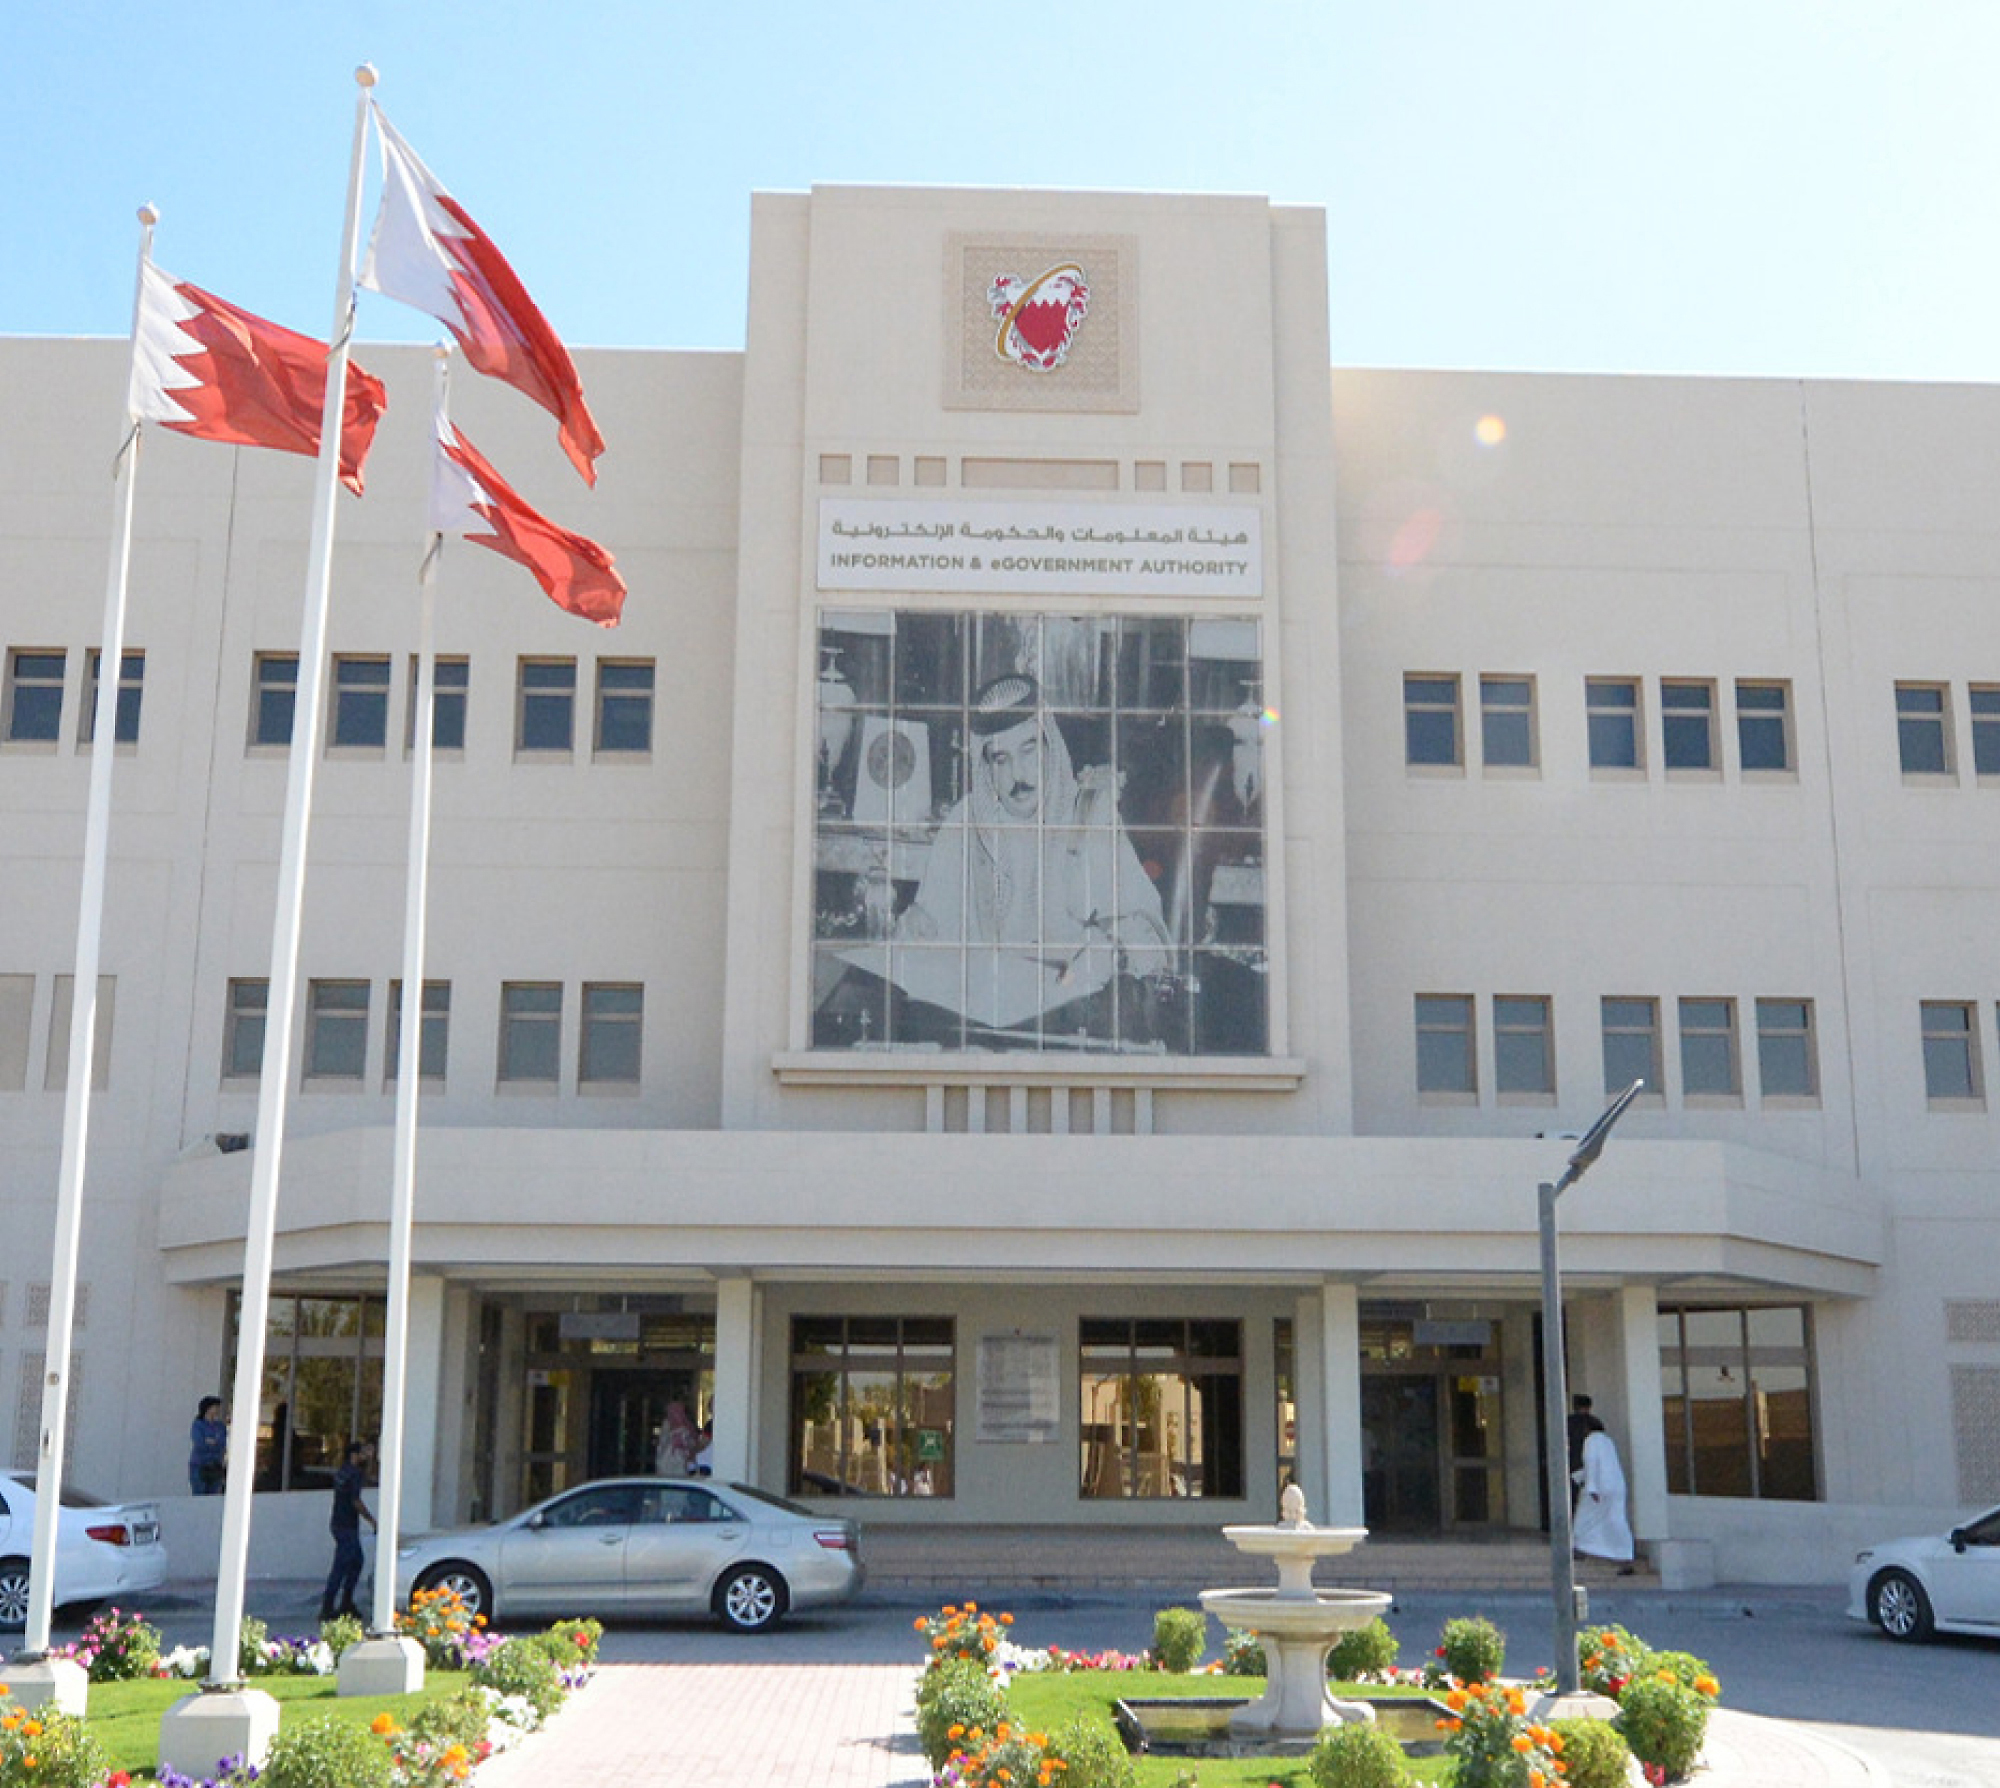 Widok z przodu budynku Organu ds. informacji i e-administracji w Bahrajnie, na którym jest zawieszona flaga państwowa